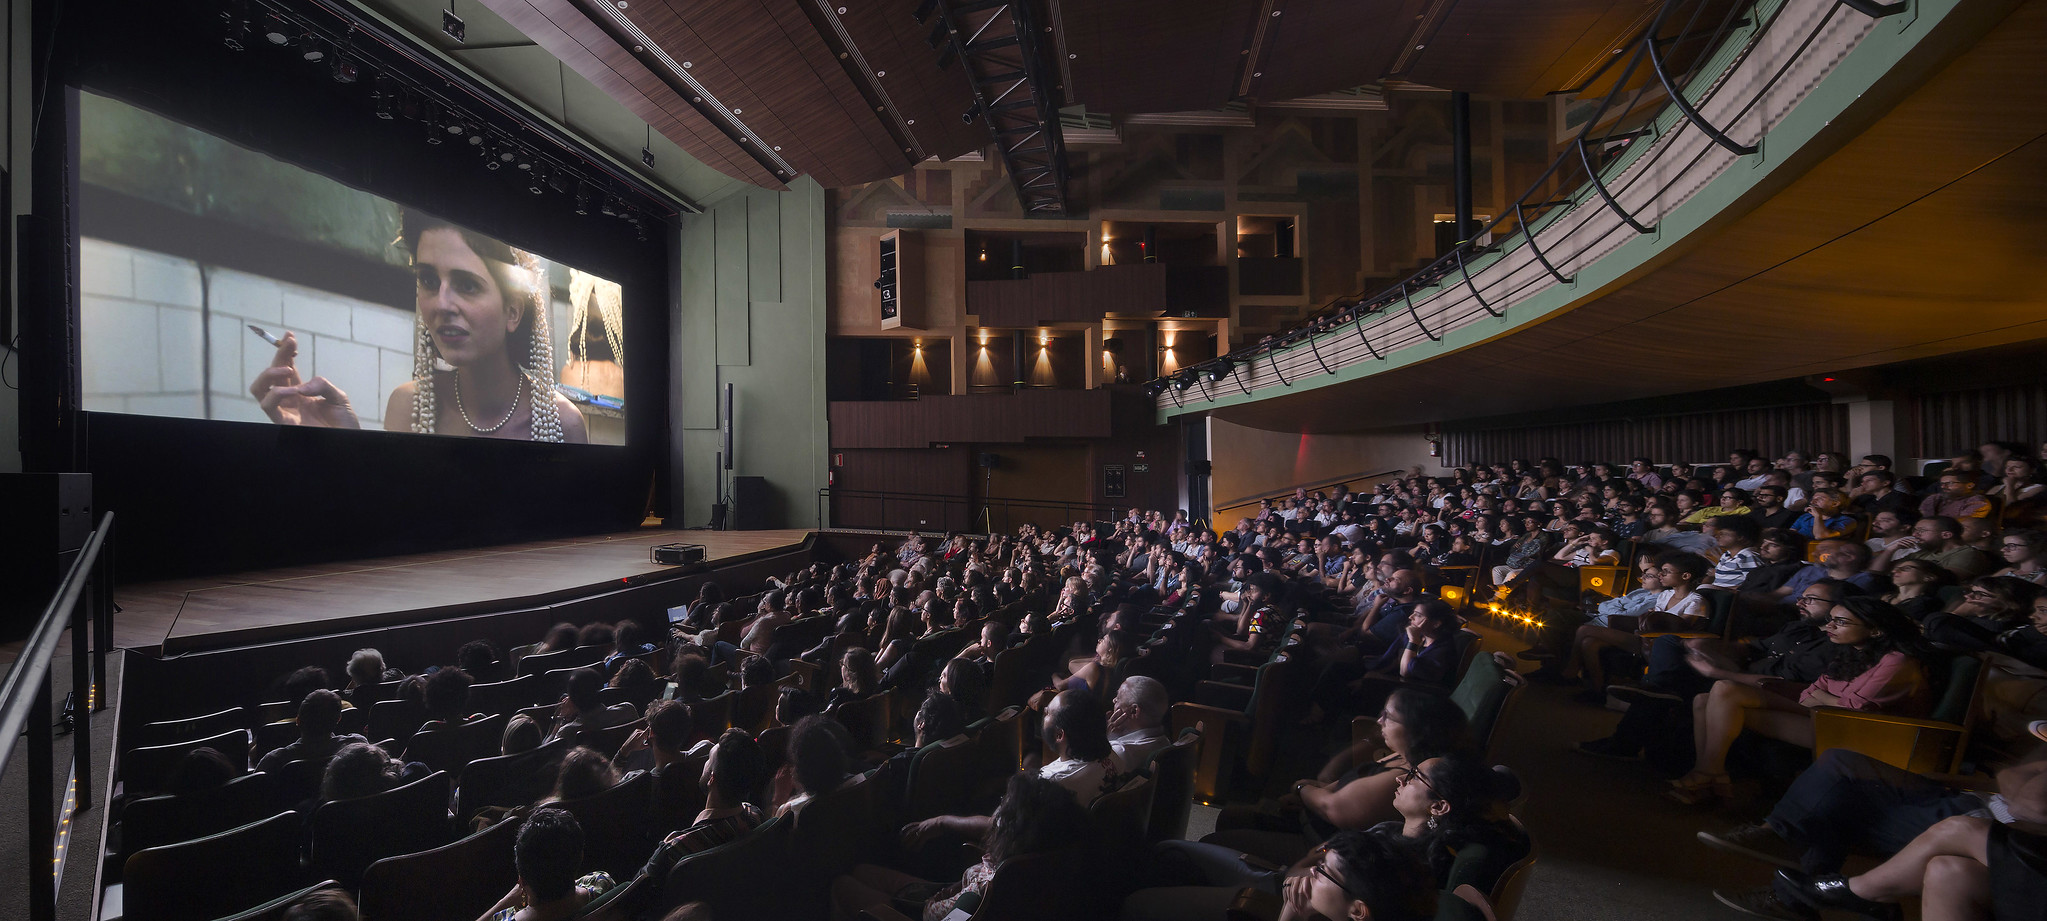 CineBH reforça a importância das parcerias e coproduções e celebra efervescência do nosso cinema